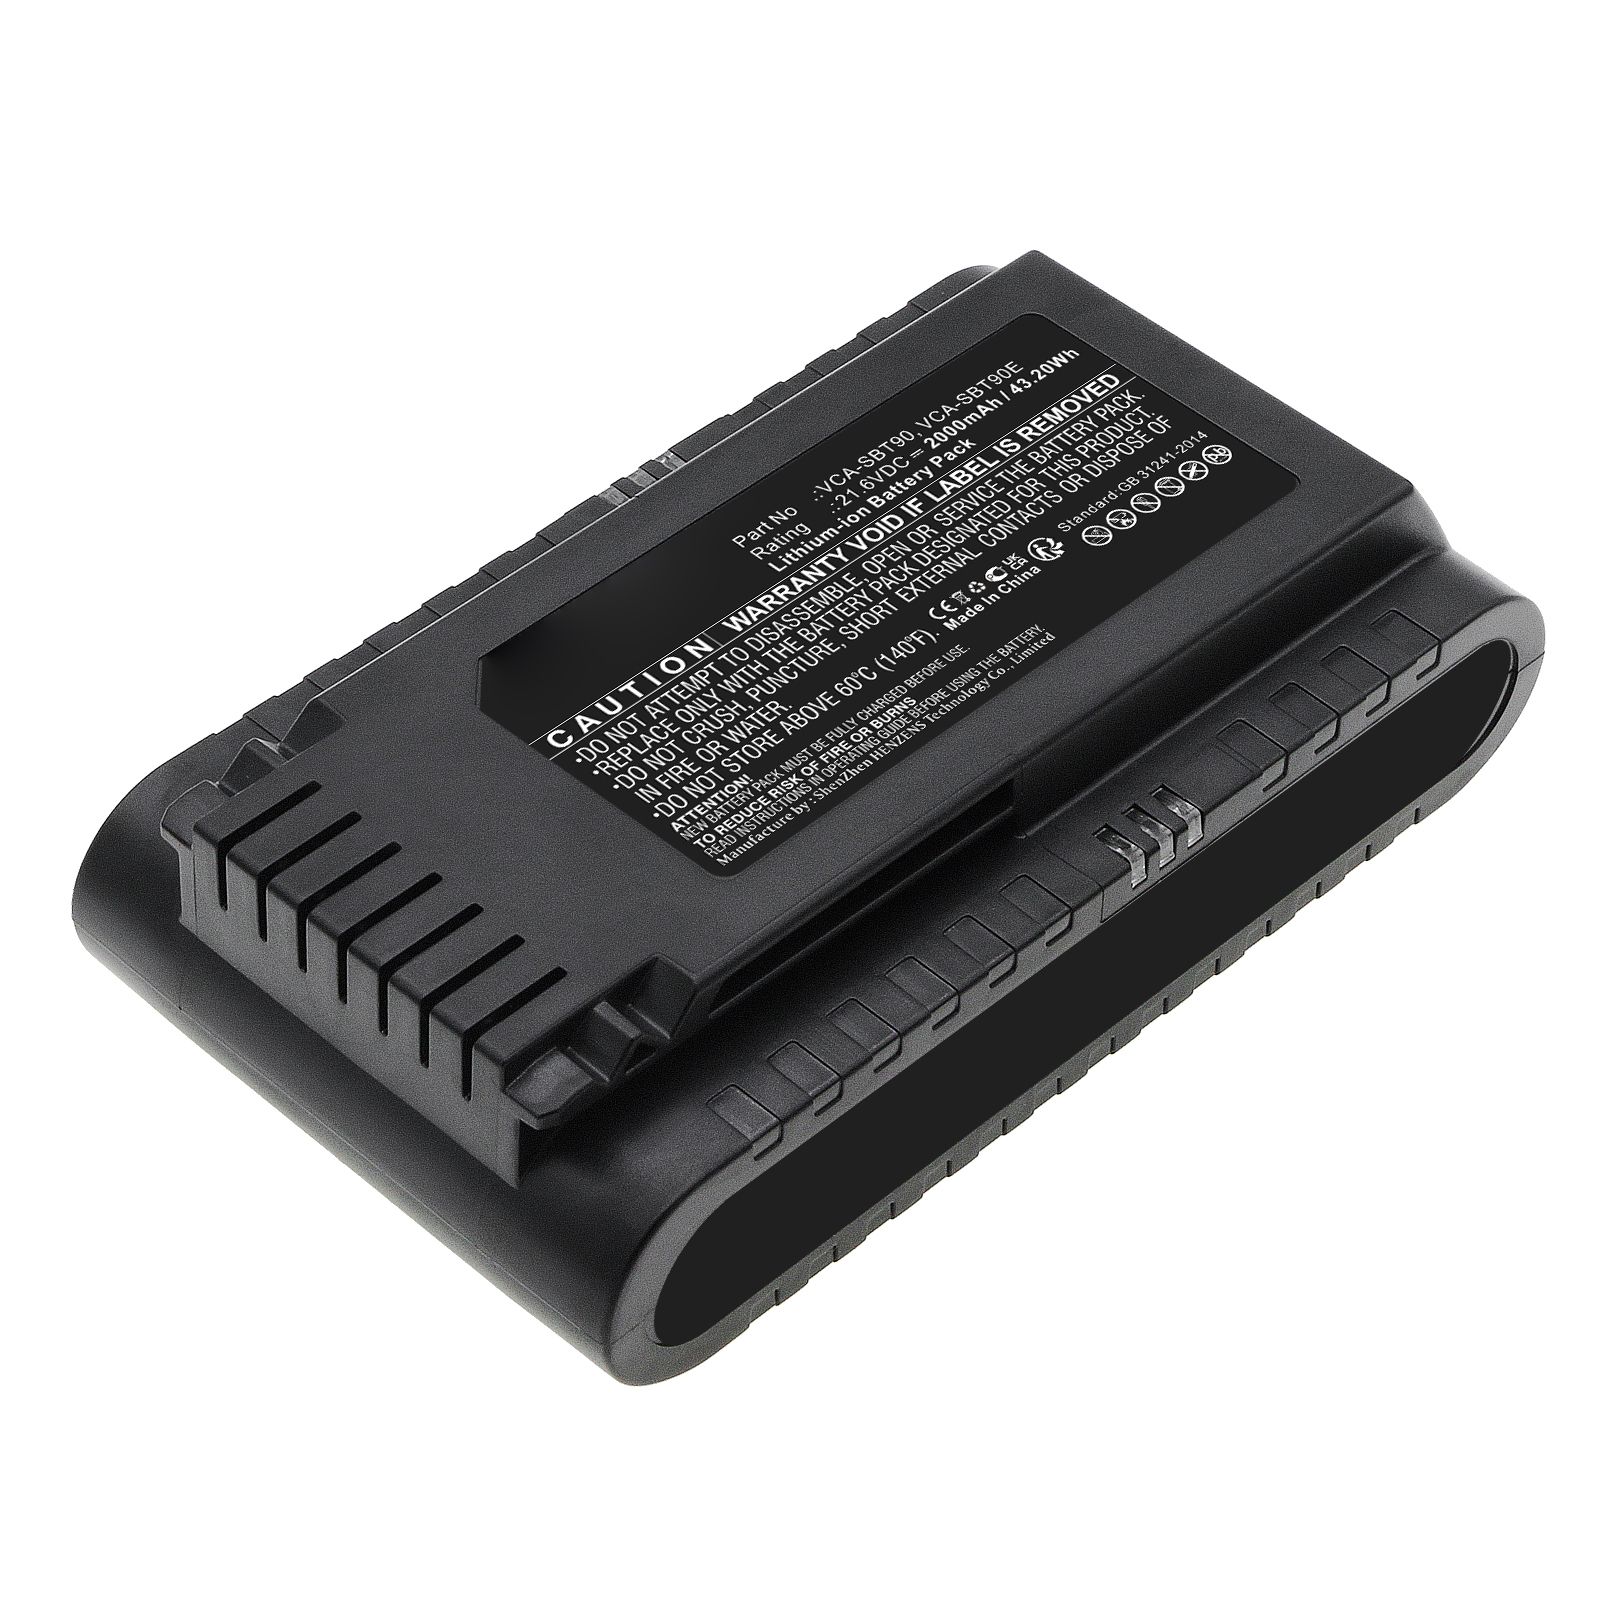 Synergy Digital Vacuum Cleaner Battery, Compatible with Samsung DJ96-00221A Vacuum Cleaner Battery (Li-ion, 21.6V, 2000mAh)